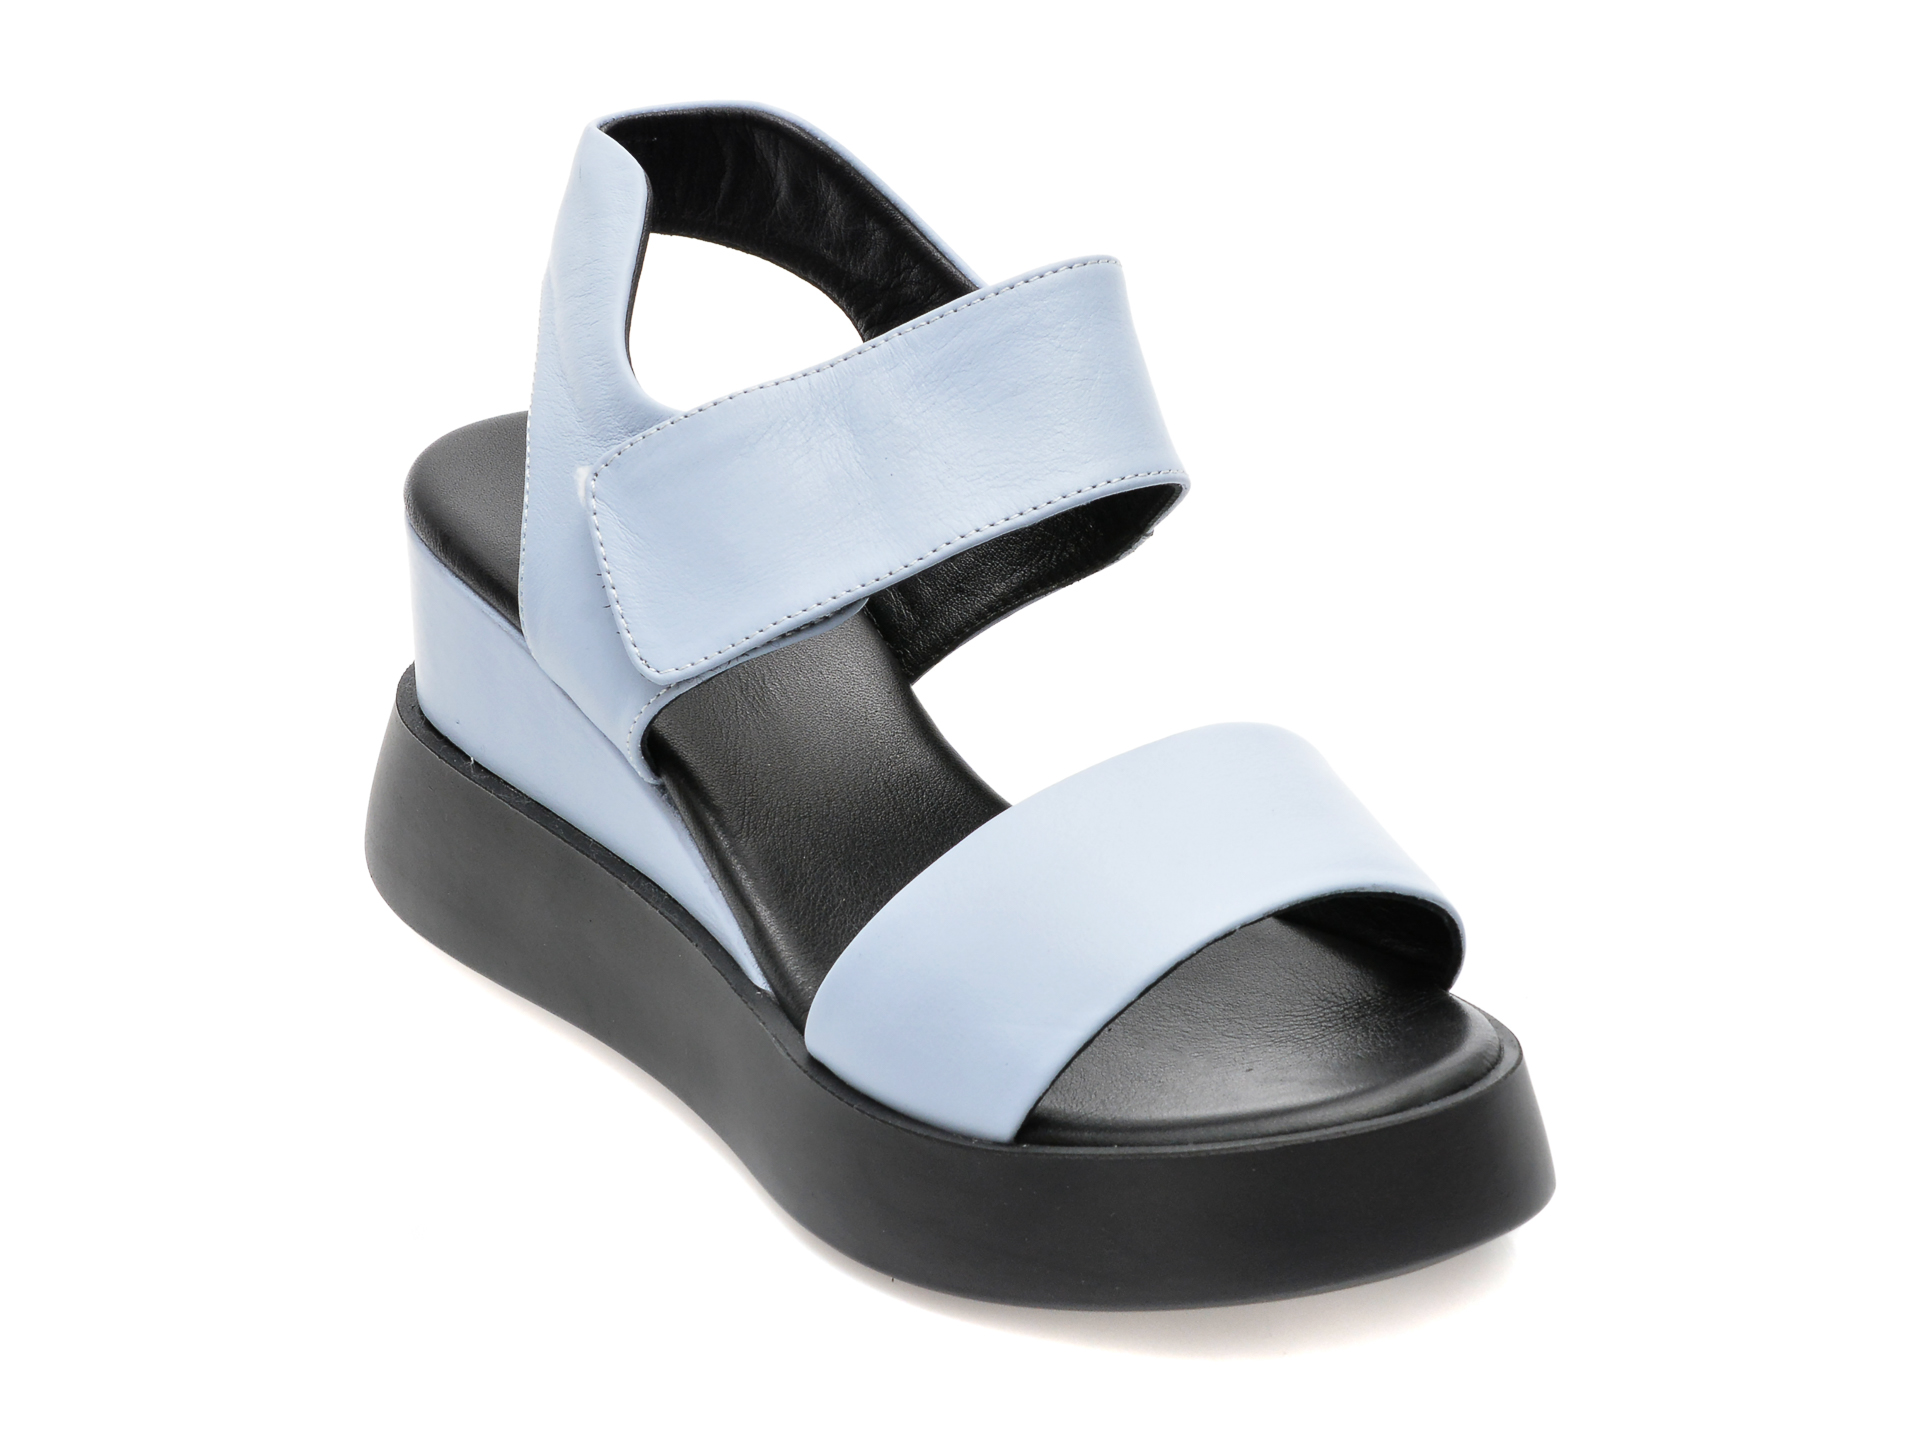 Sandale AQUAMARINE albastre, 3002, din piele naturala /femei/sandale imagine noua